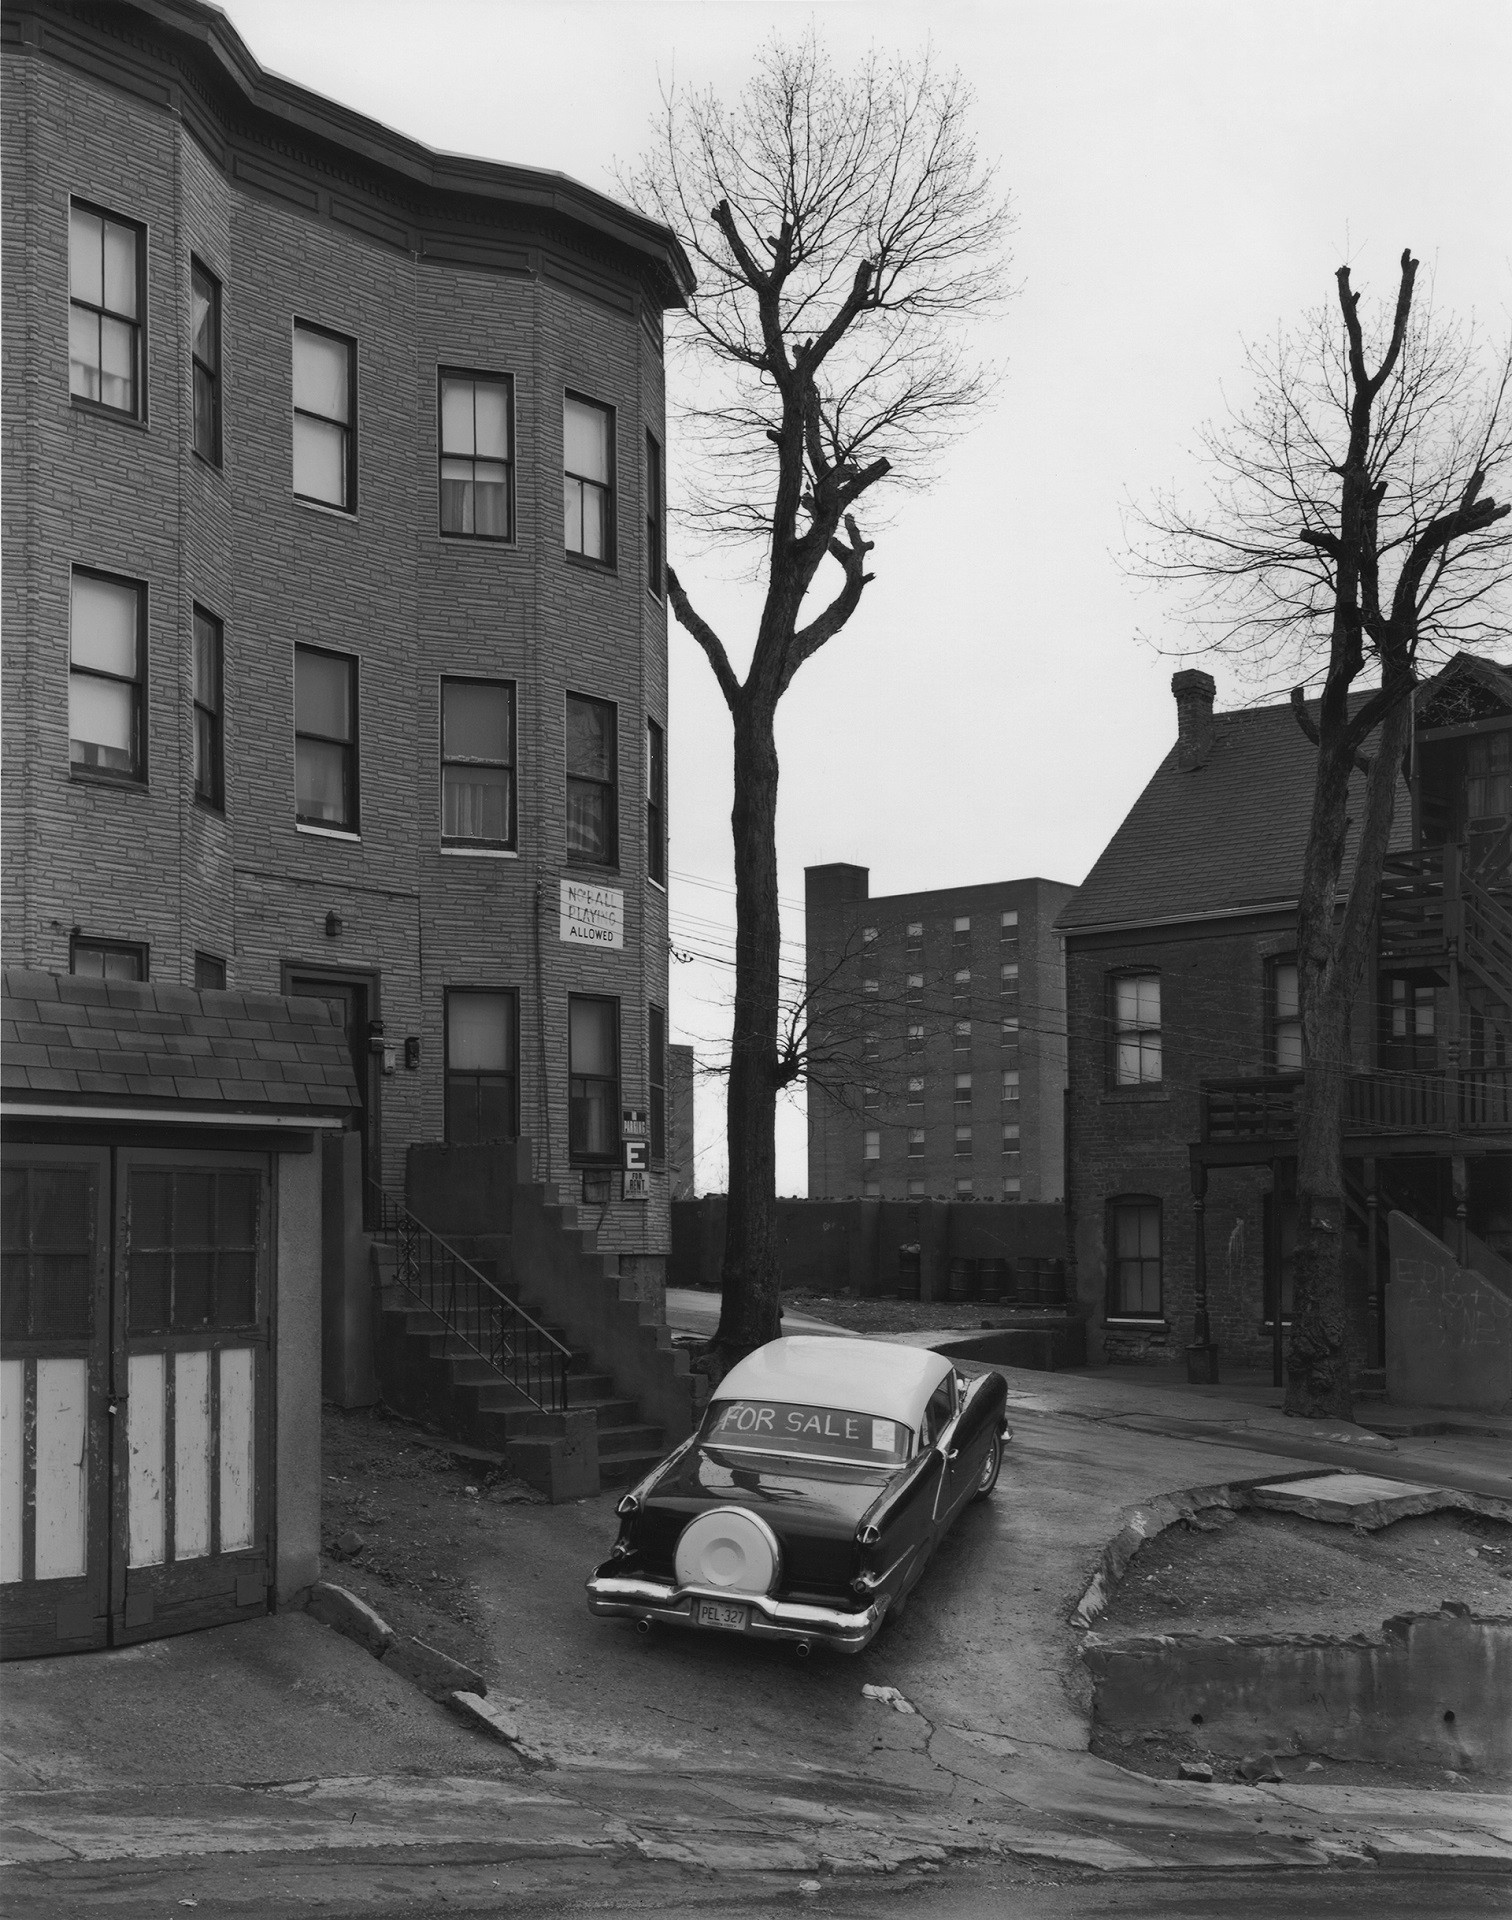 Photographie noir et blanc d'immeuble et de voiture, dans une banlieue américaine des années 1960-1970.